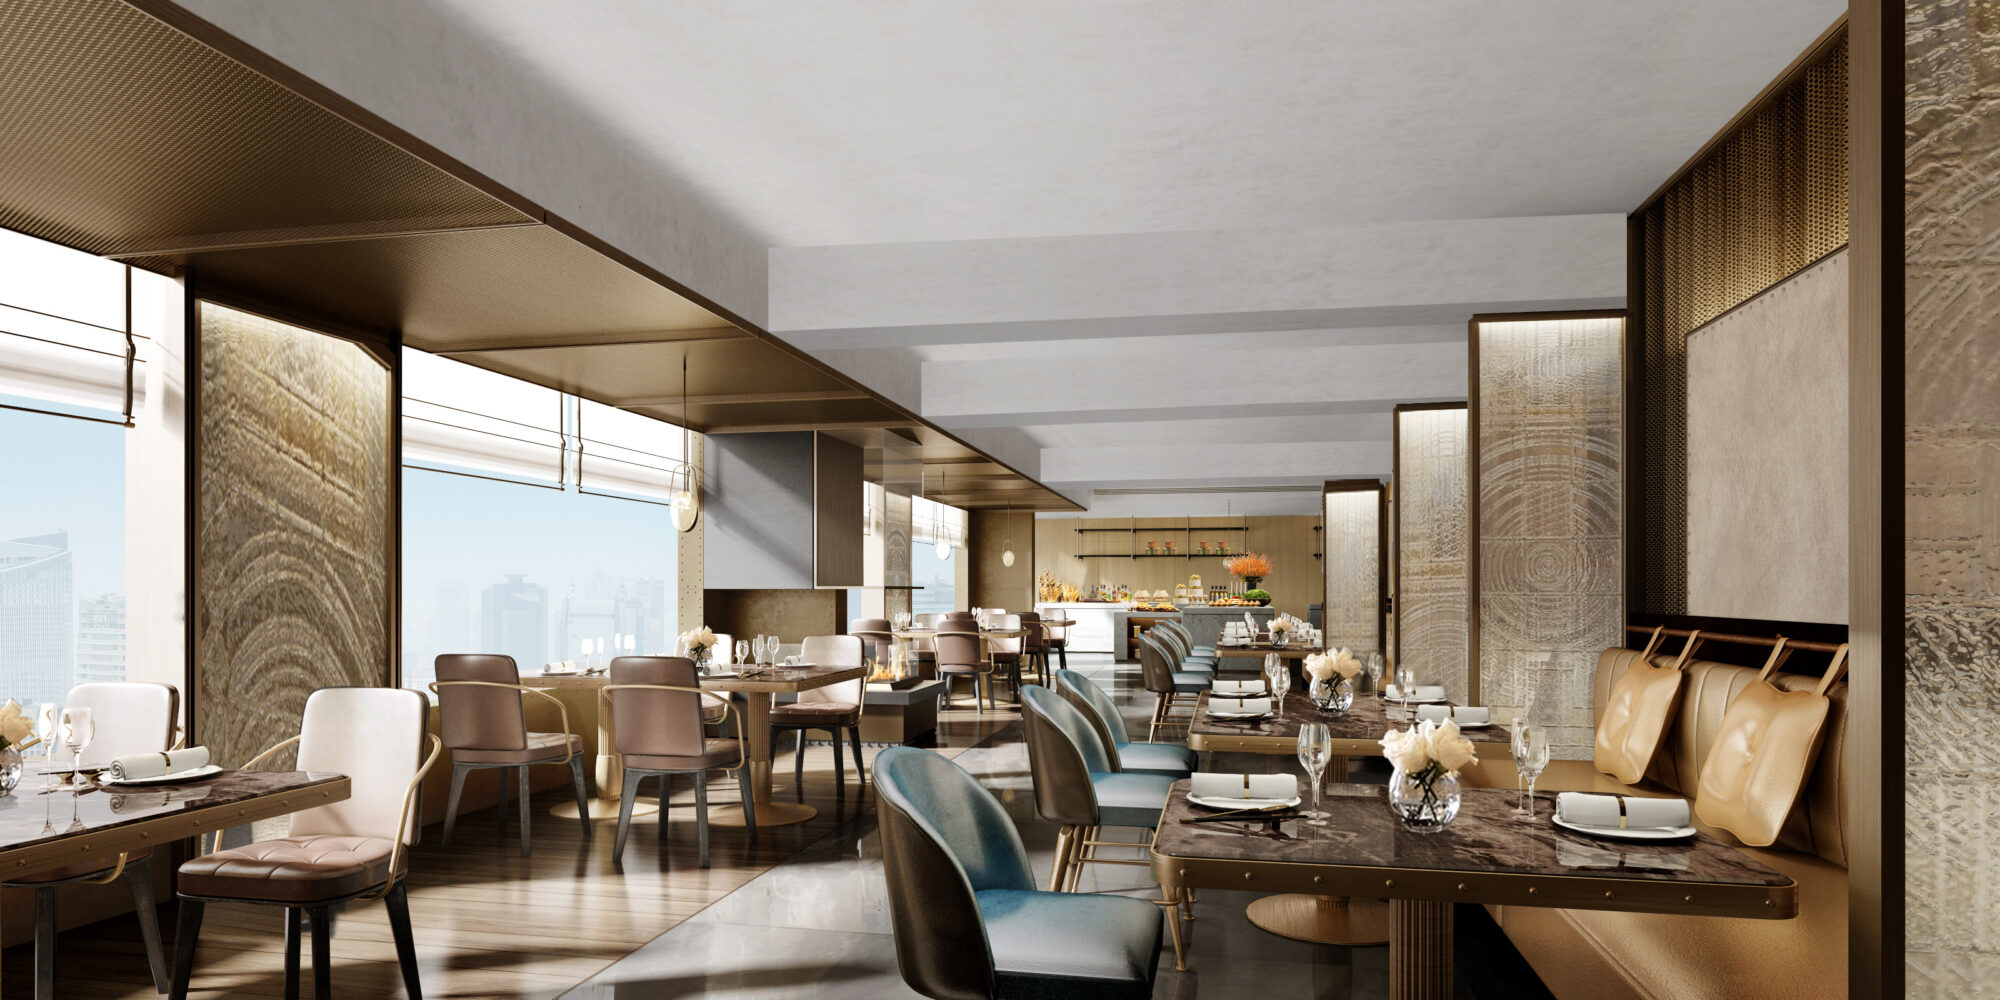 北京港澳中心瑞士酒店 Swissotel Beijing Club Lounge - R.jpeg